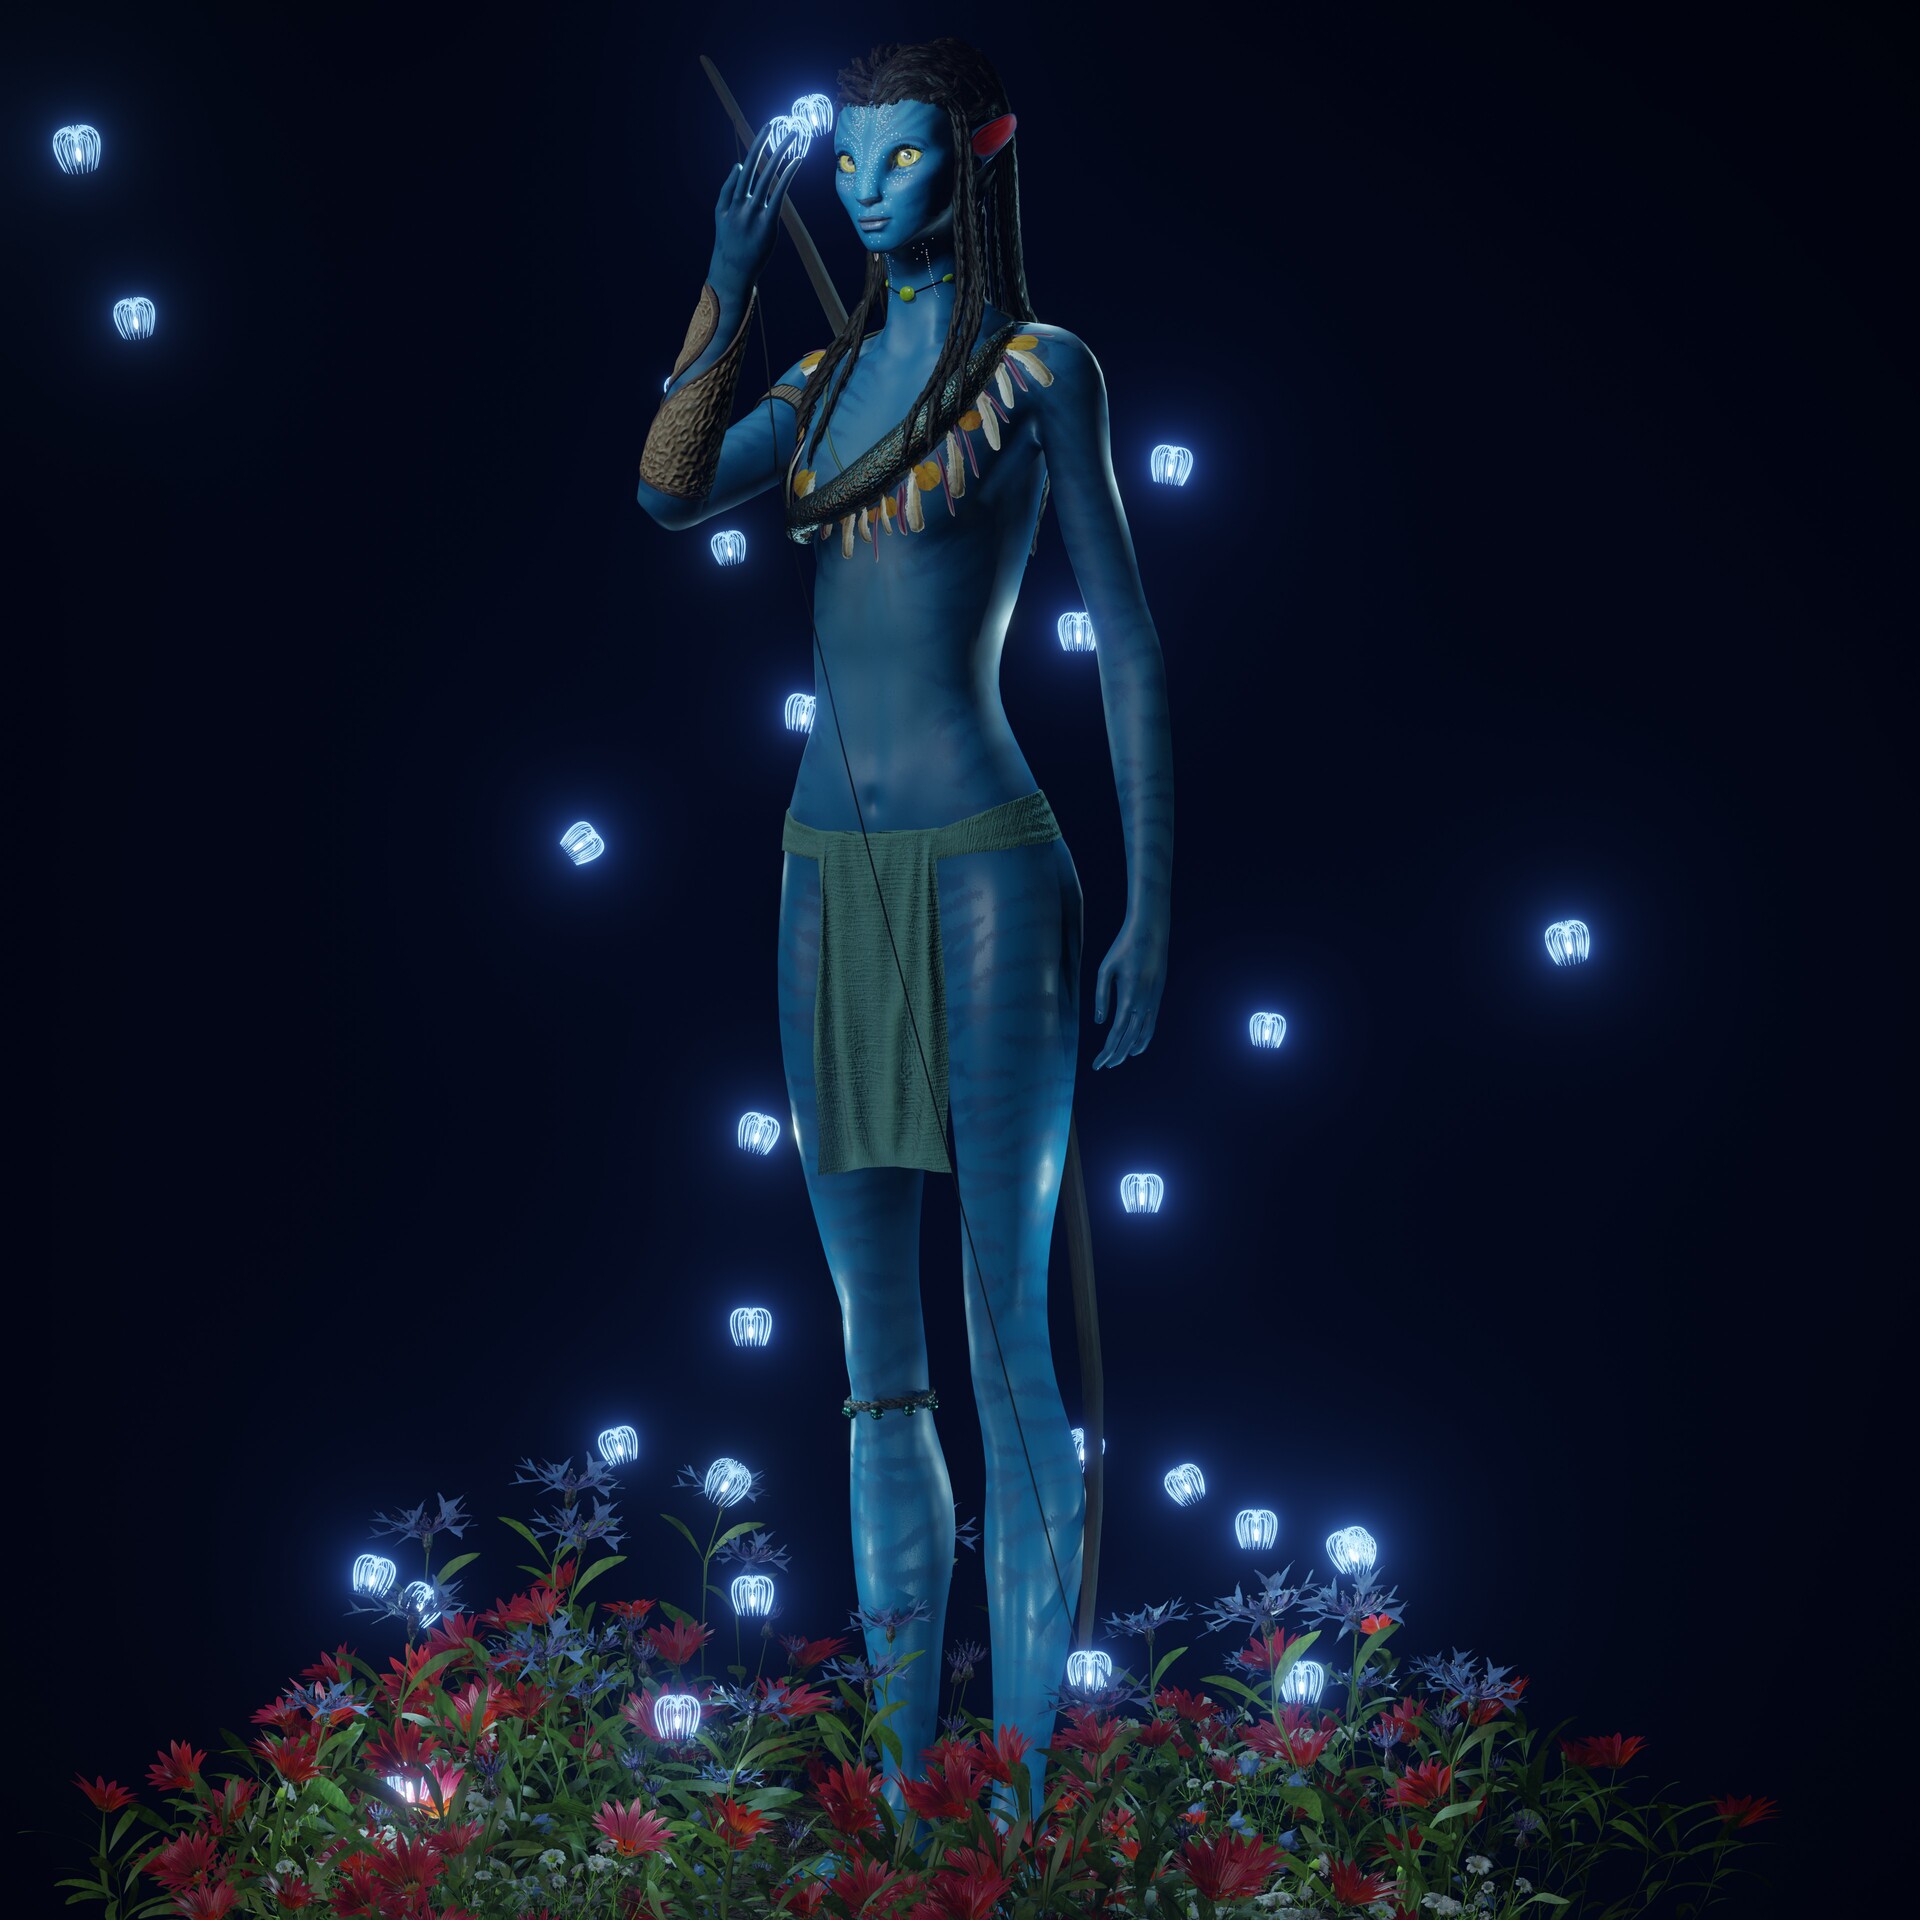 ArtStation - Avatar girls + Flowers